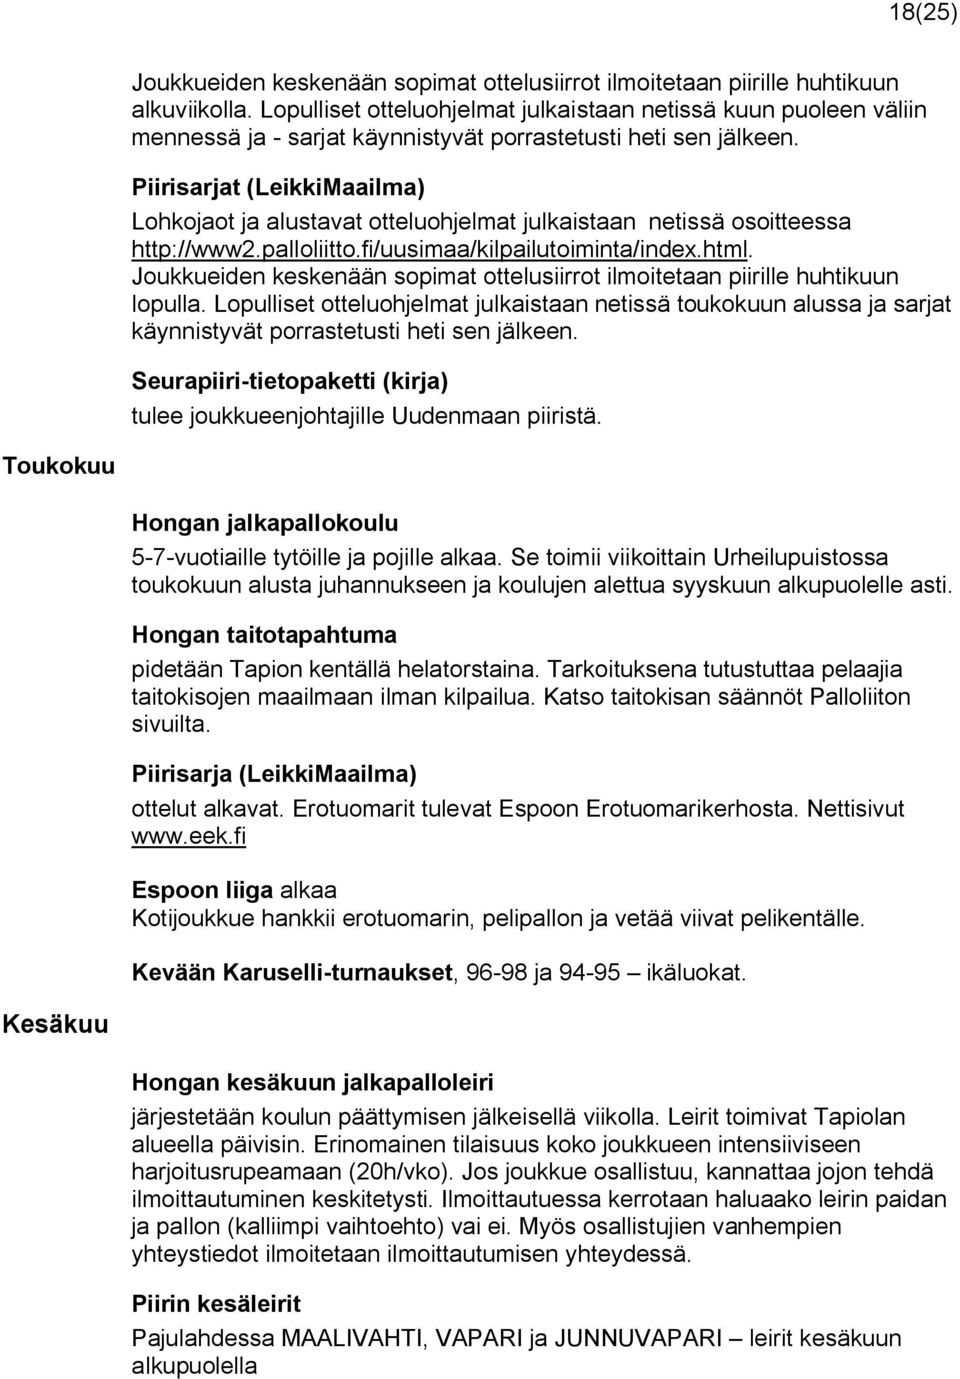 Piirisarjat (LeikkiMaailma) Lohkojaot ja alustavat otteluohjelmat julkaistaan netissä osoitteessa http://www2.palloliitto.fi/uusimaa/kilpailutoiminta/index.html.